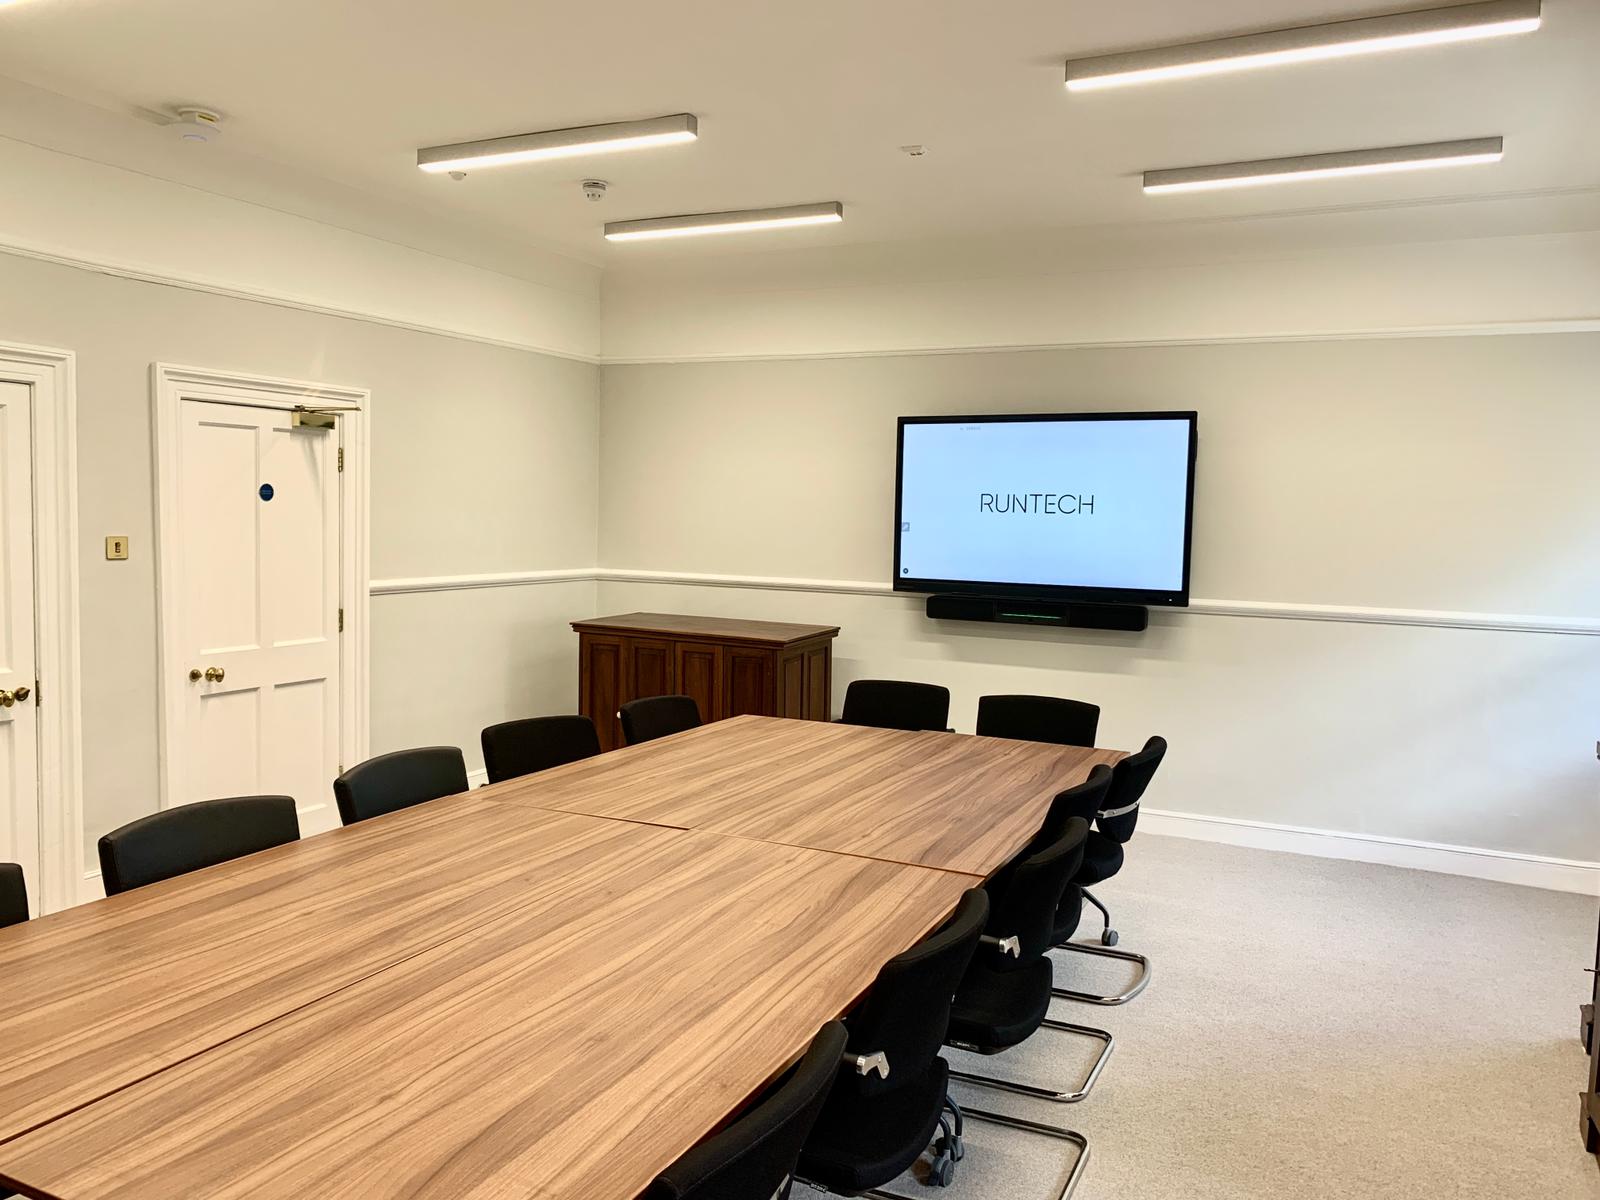 The British Academy - Runtech AV installation for their boardroom